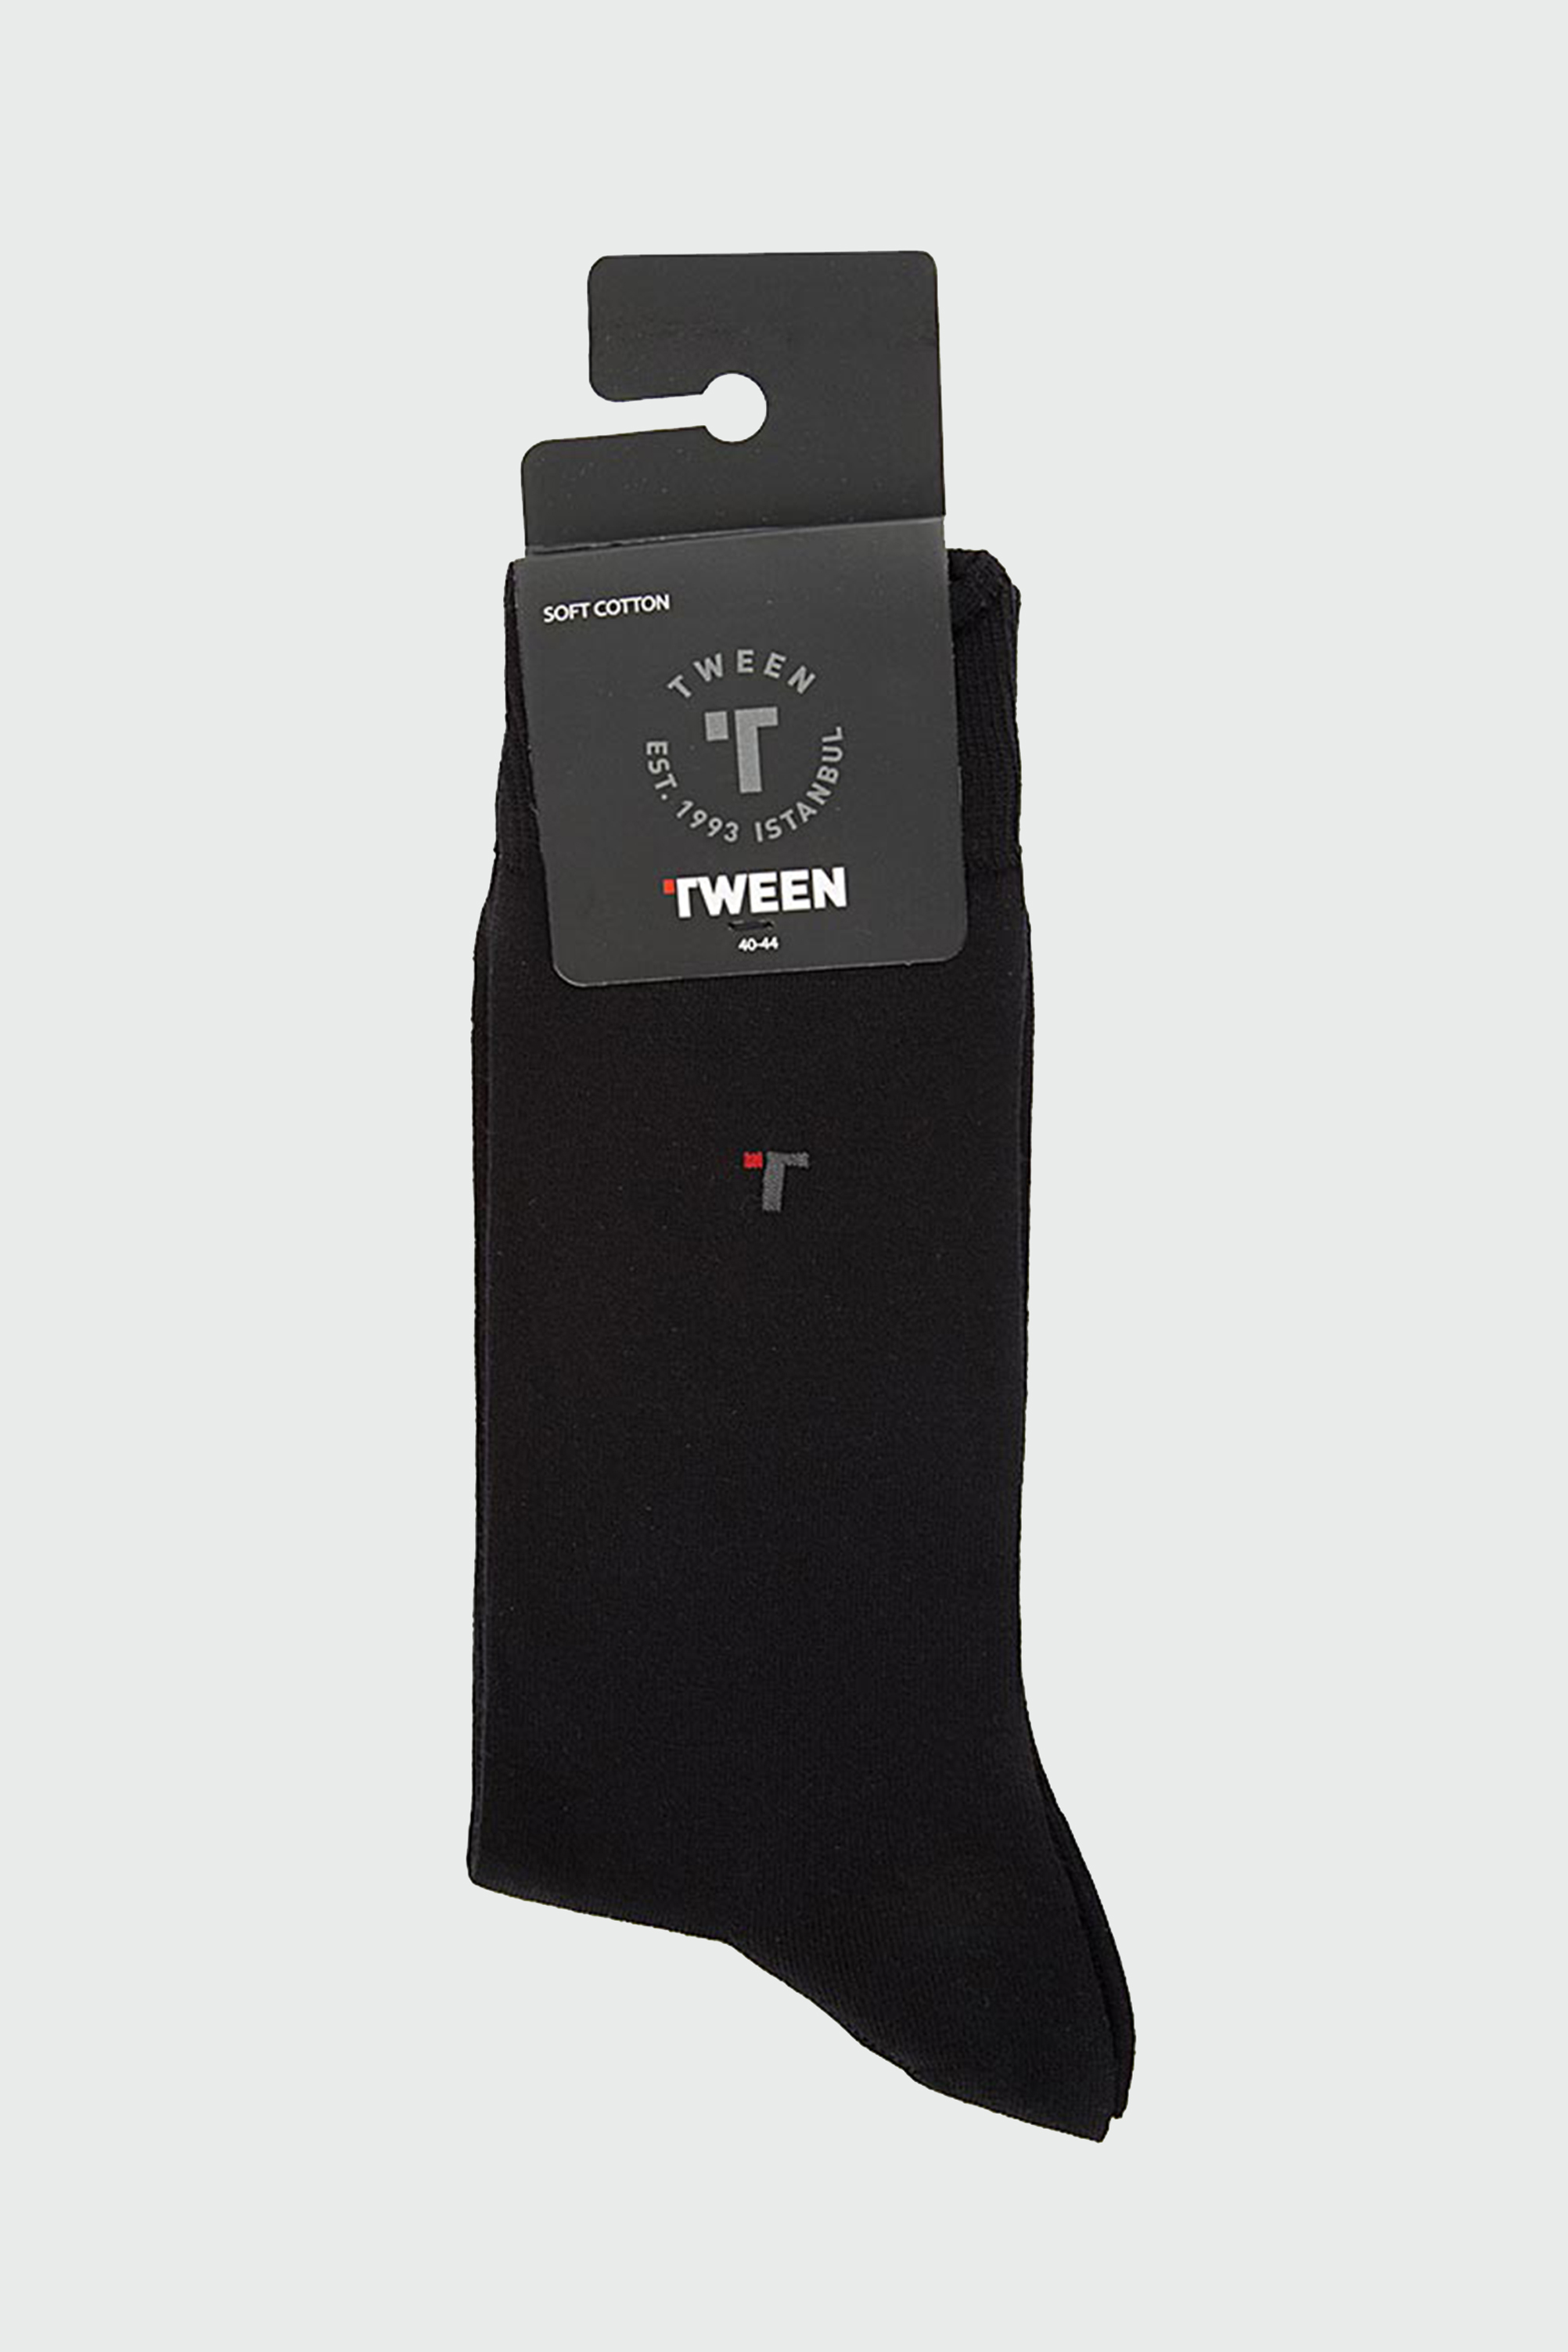 Damat Tween Tween Siyah Çorap. 1